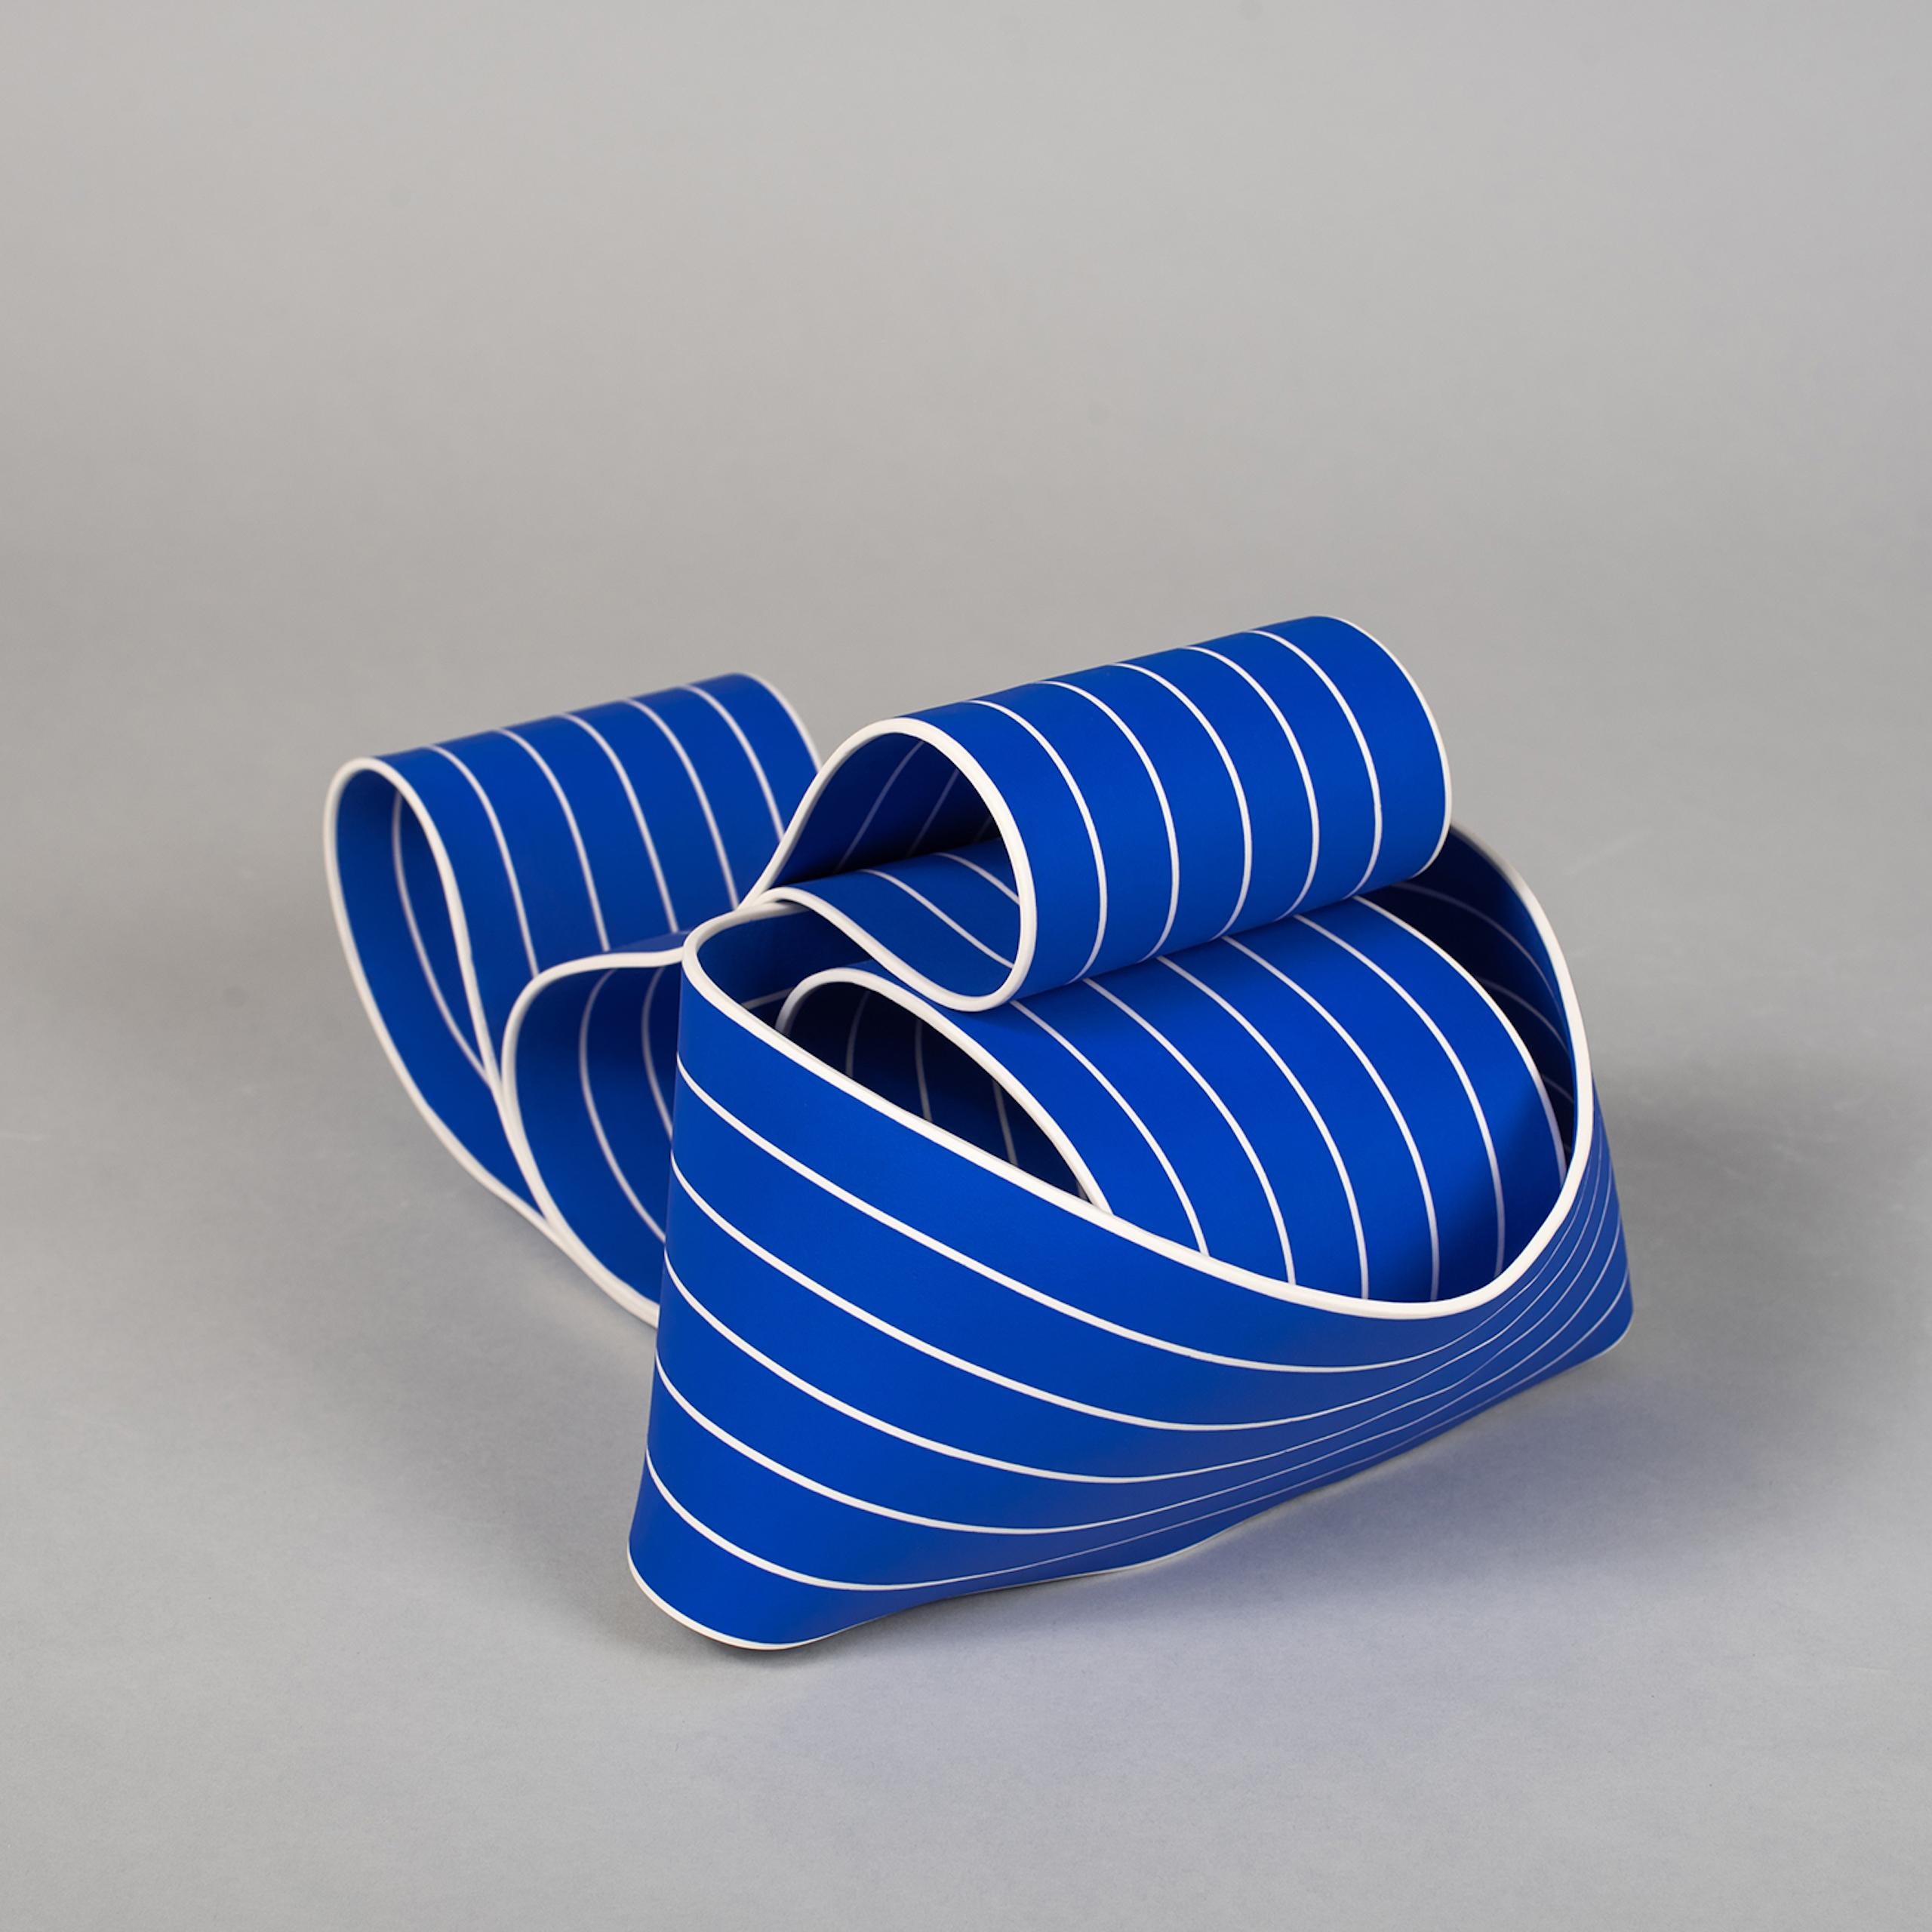 Entrapped 1 by Simcha Even-Chen - Porcelain sculpture, blue lines, movement For Sale 5